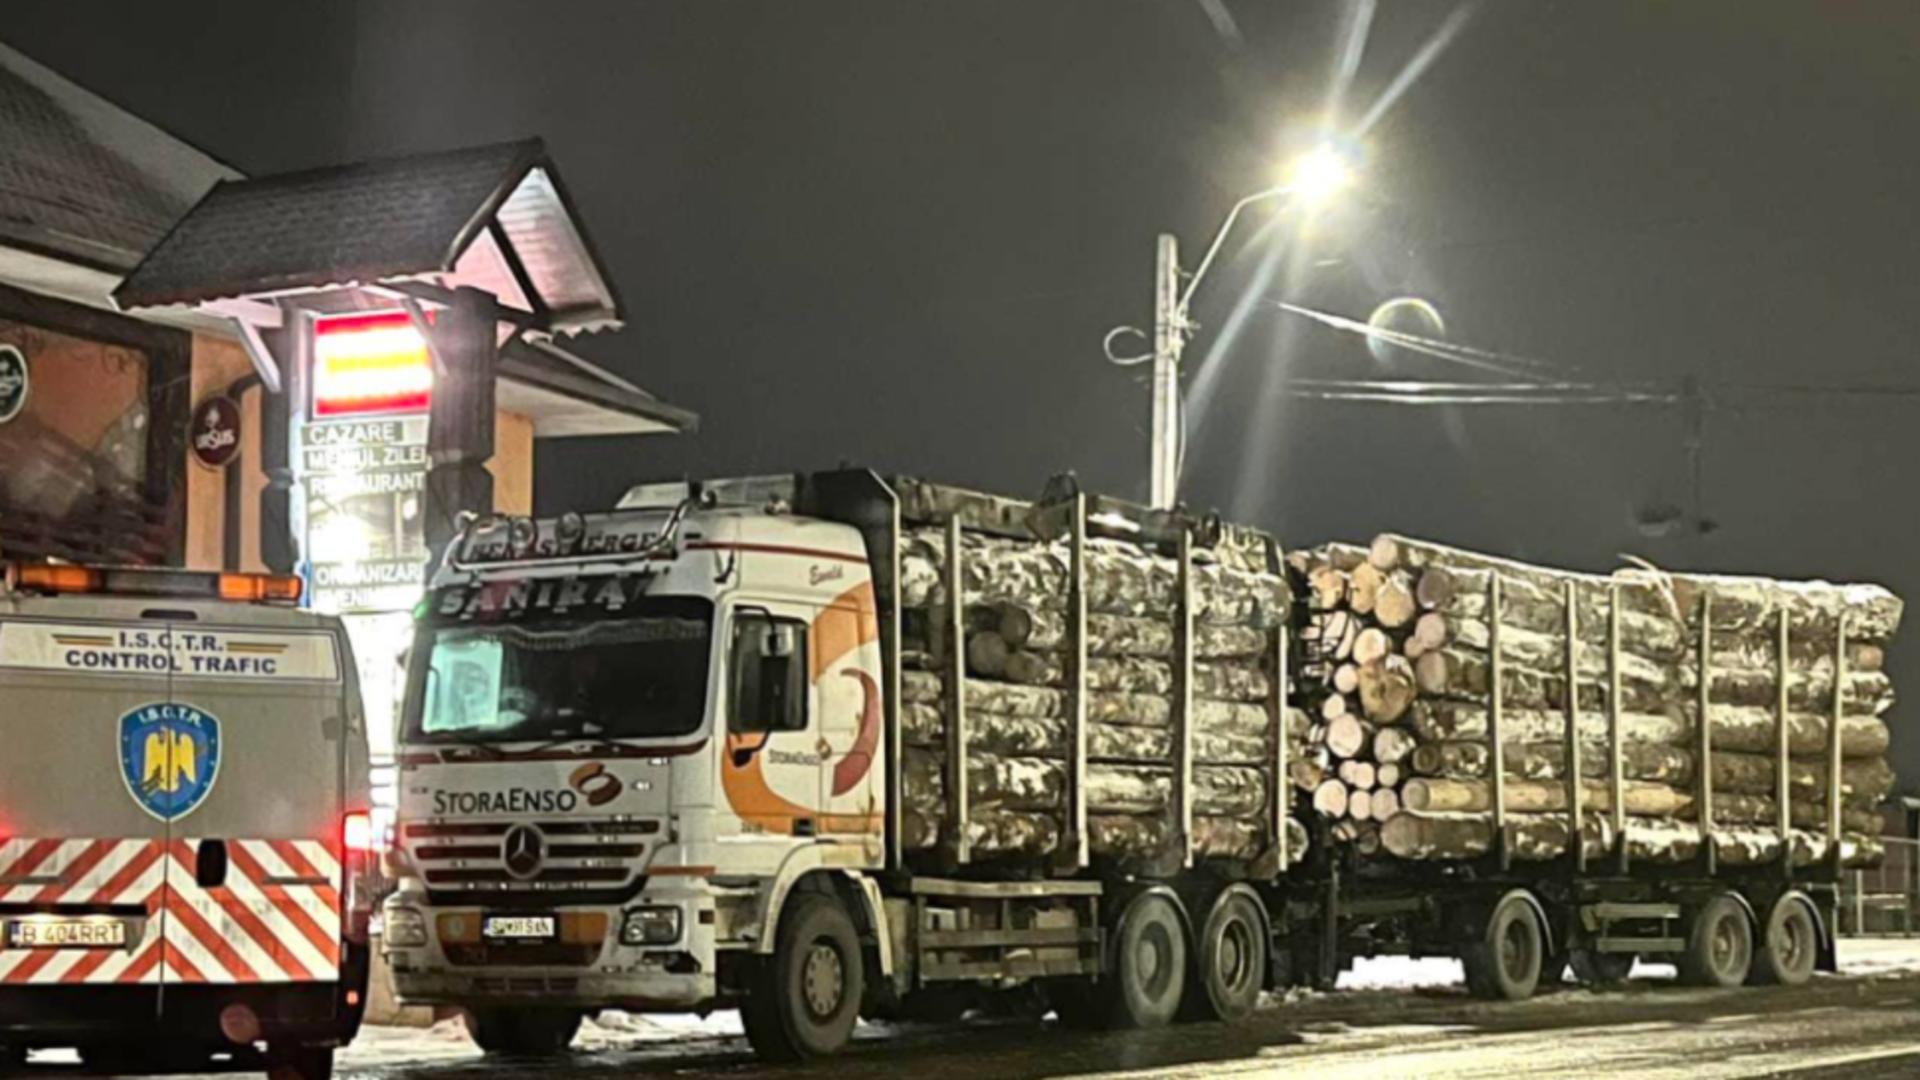 Control in trafic transport lemn (FB bodnardaniel)